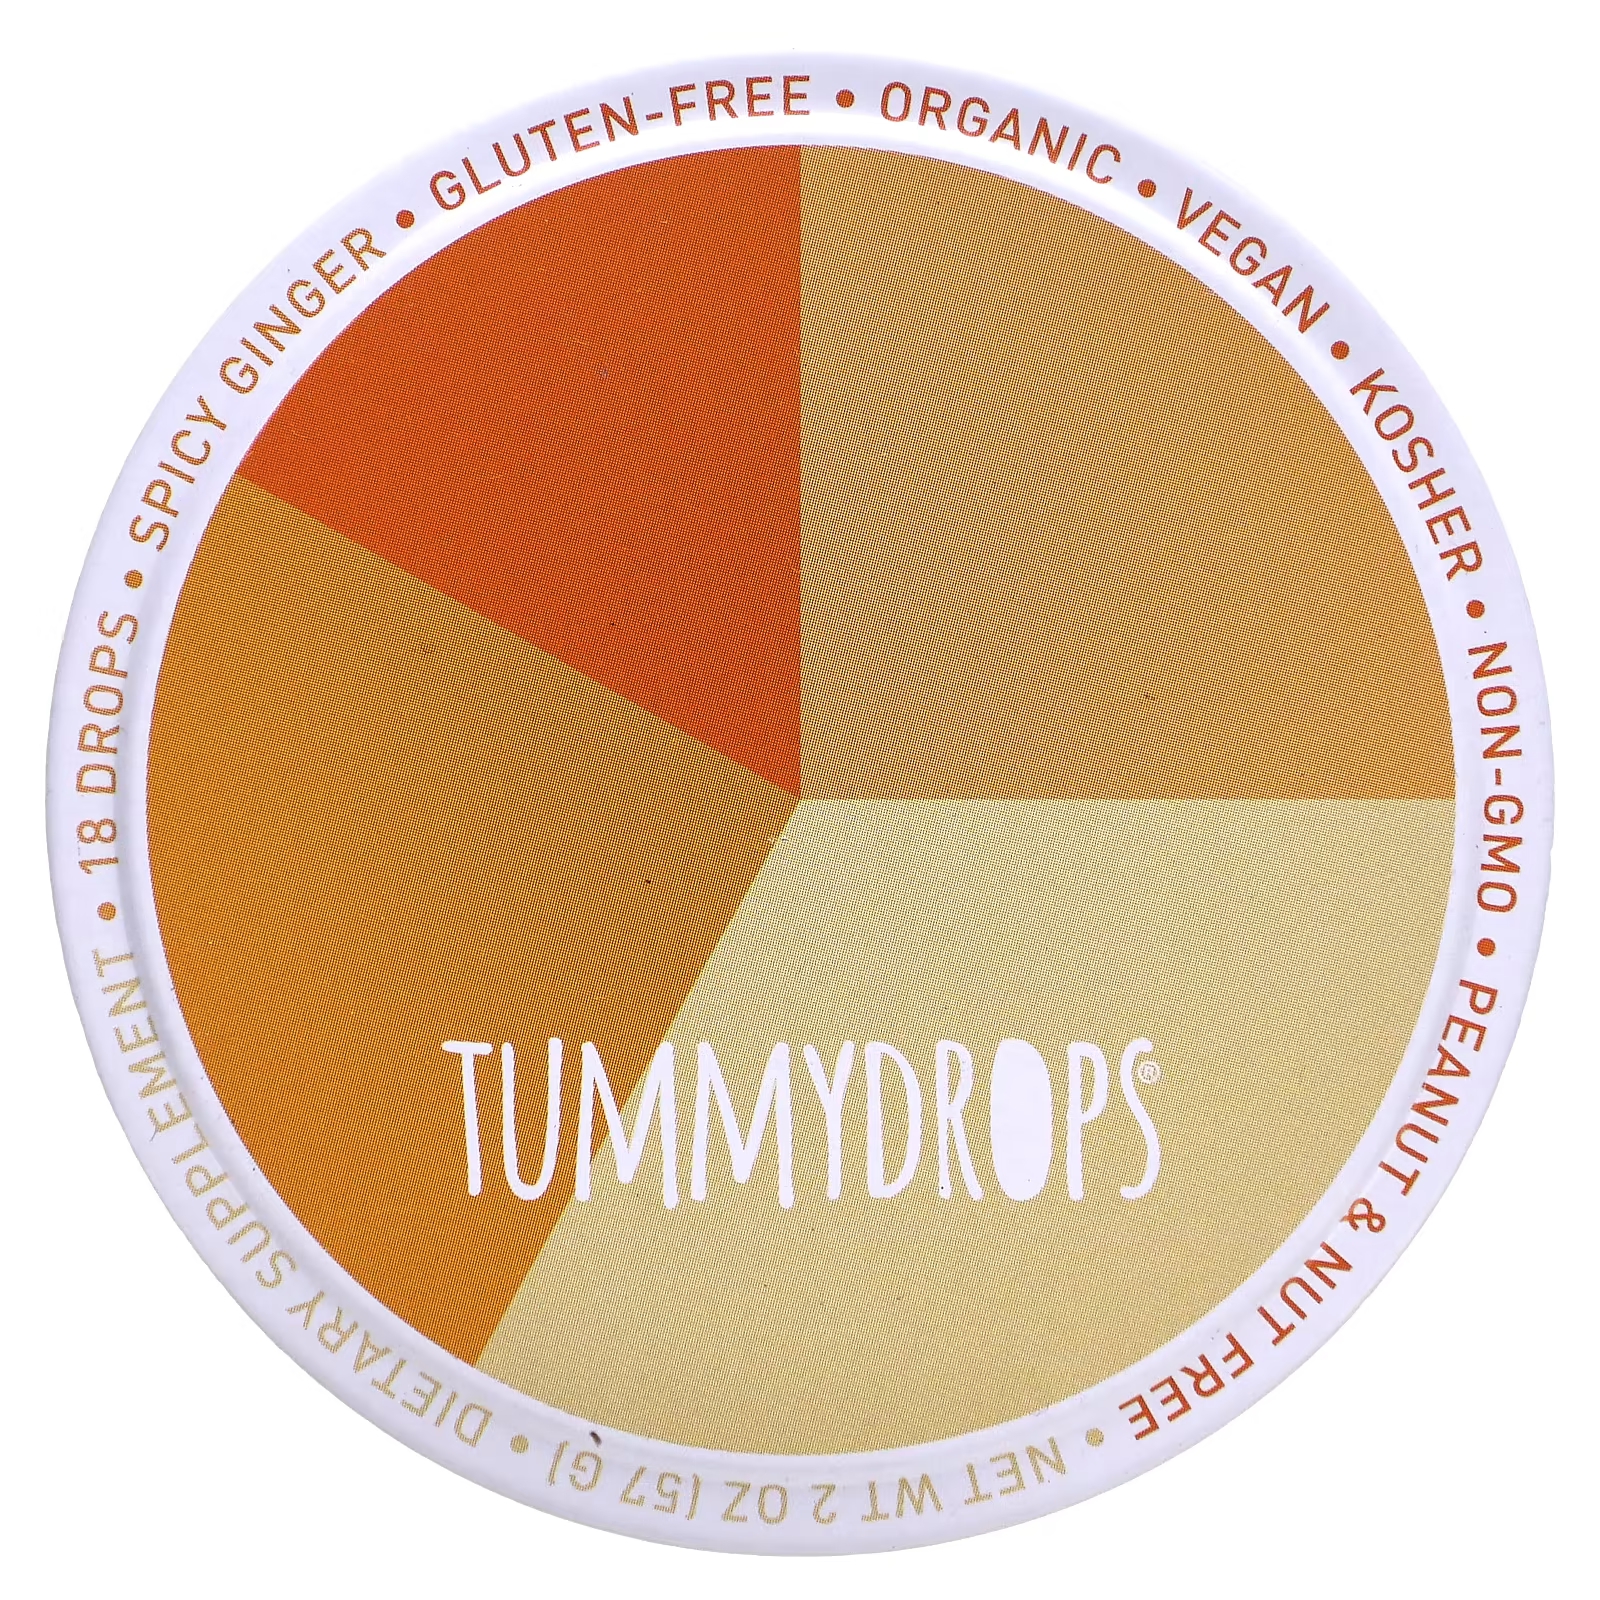 Пряный имбирь Tummydrops, 18 капель tummydrops сочные капли с ананасом и имбирем 18 капель 57 г 2 унции